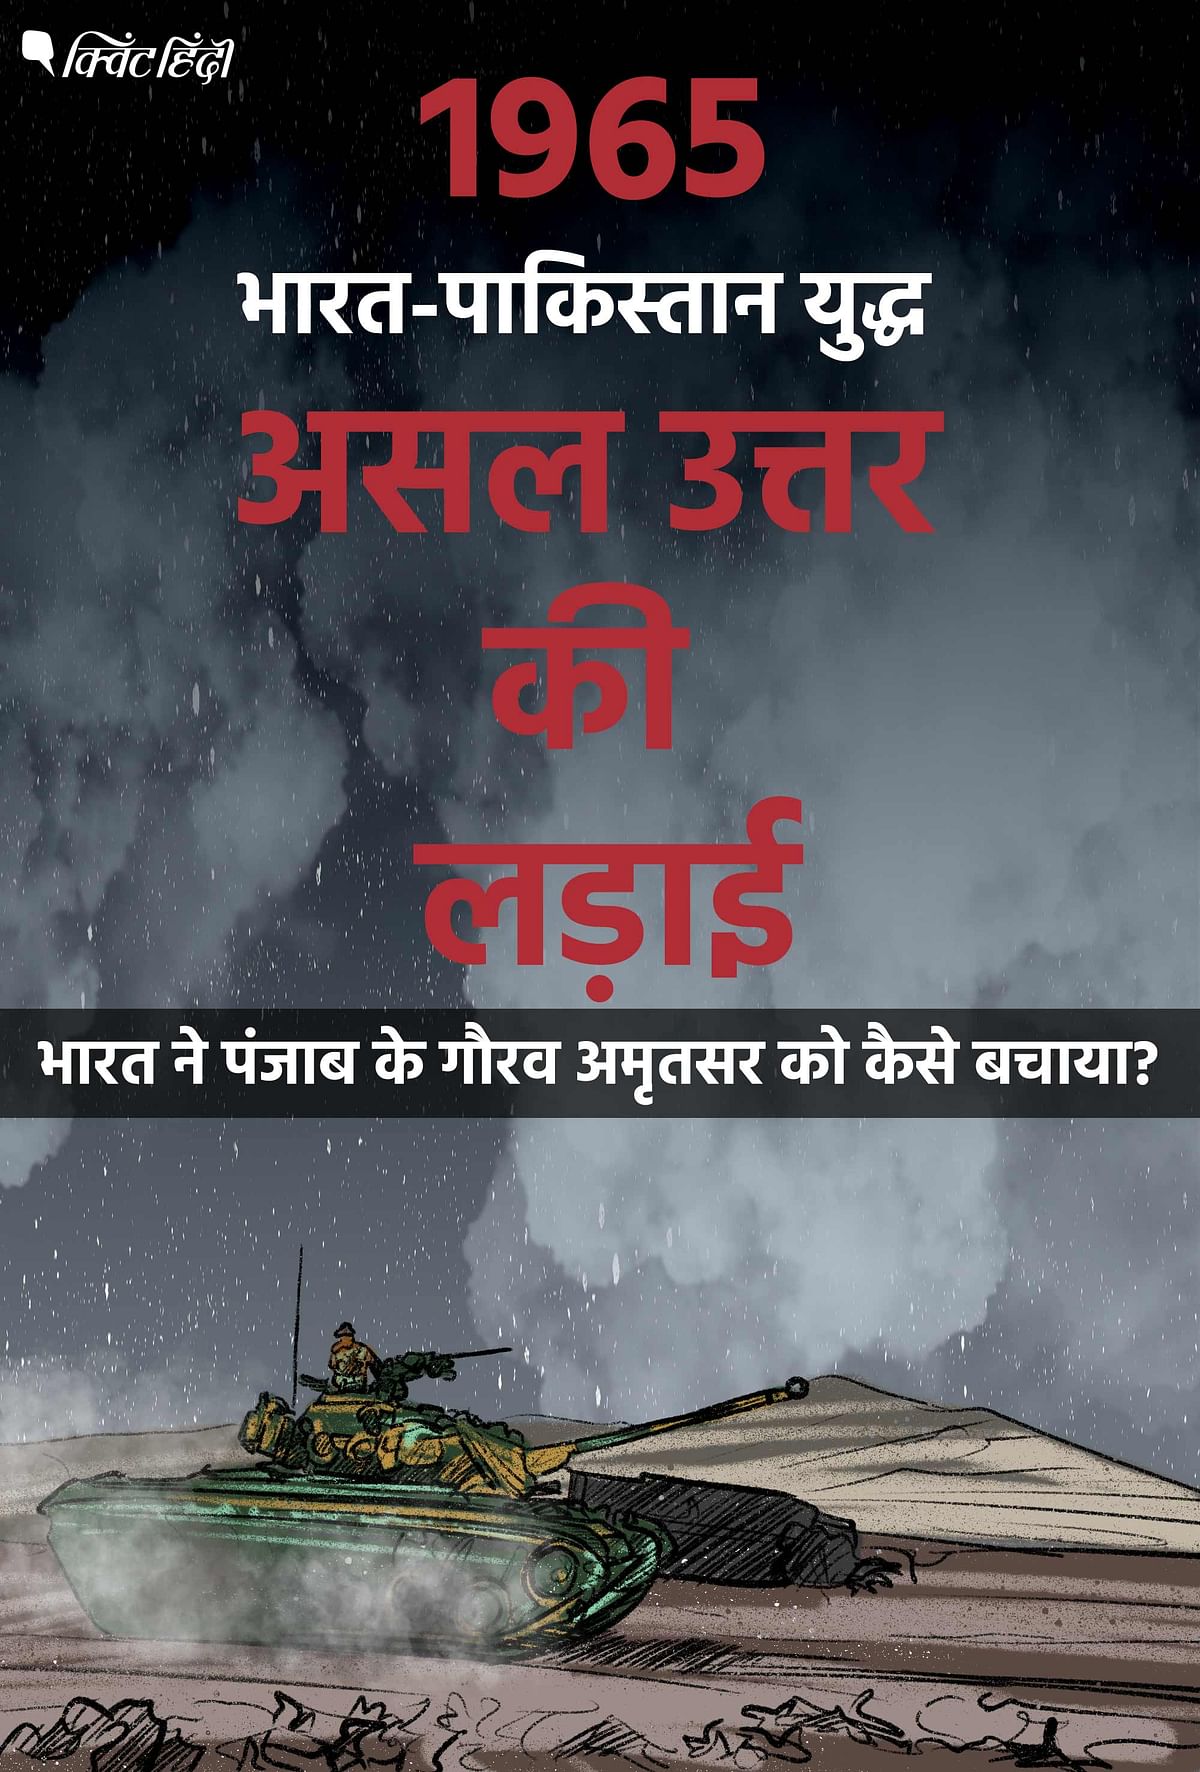 Battle of Asal Uttar: पाकिस्तान के पास थे नए अमेरिका पैटन टैंक लेकिन पुराने टैंकों से भारतीय जवानों ने कब्र खोद डाली